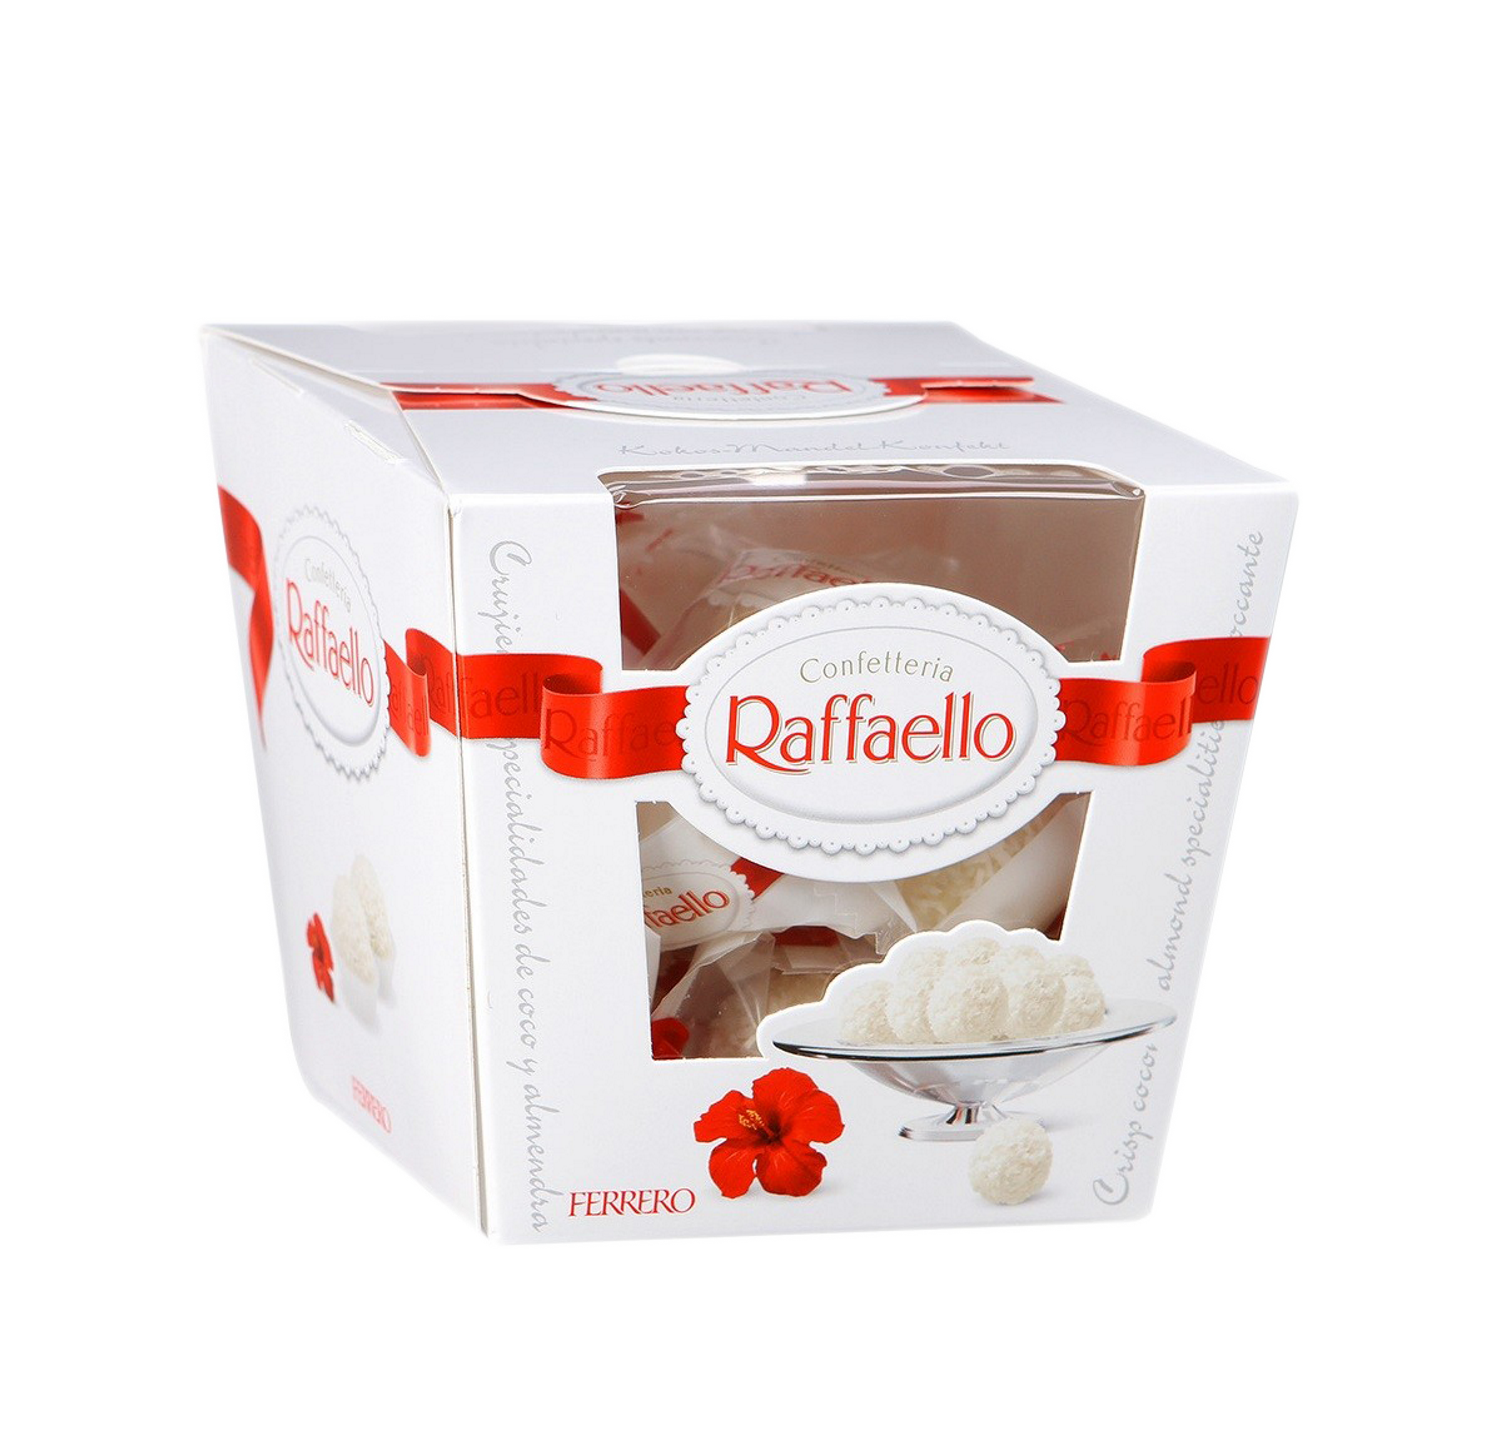 При покупке запонок коробка Raffaello в подарок! 